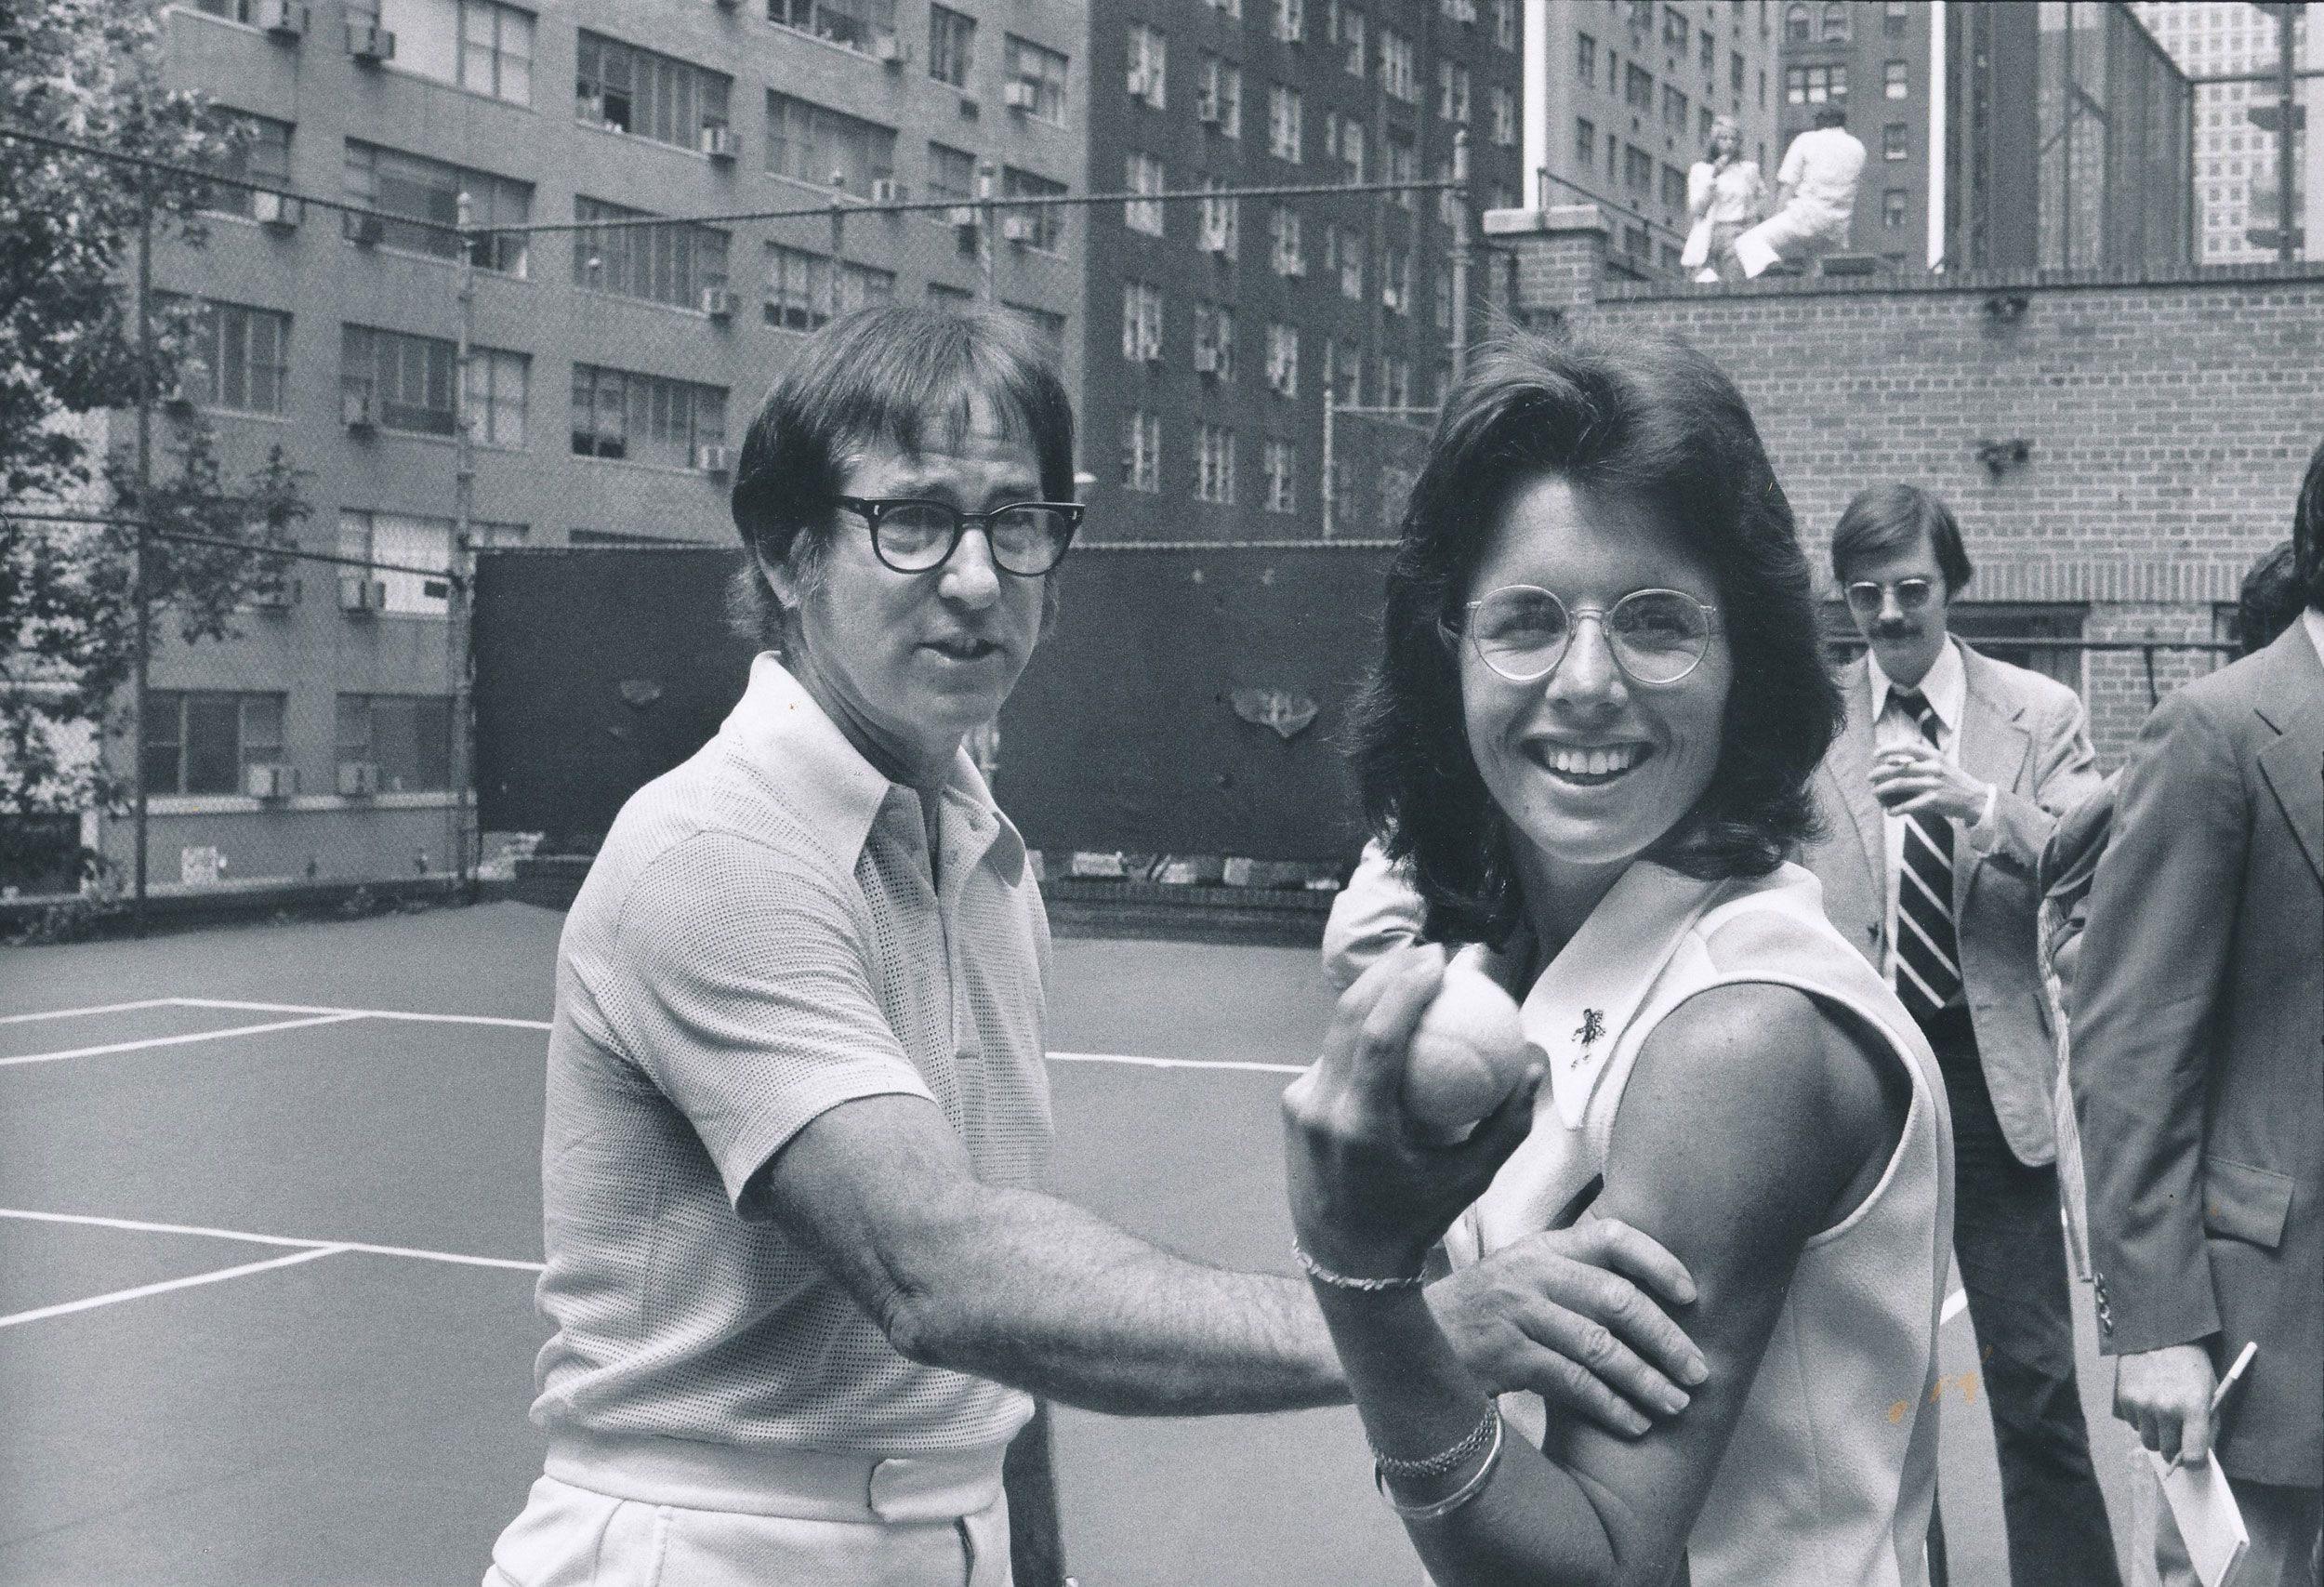 Billie Jean King wins 1973 'Battle of the Sexes' tennis match